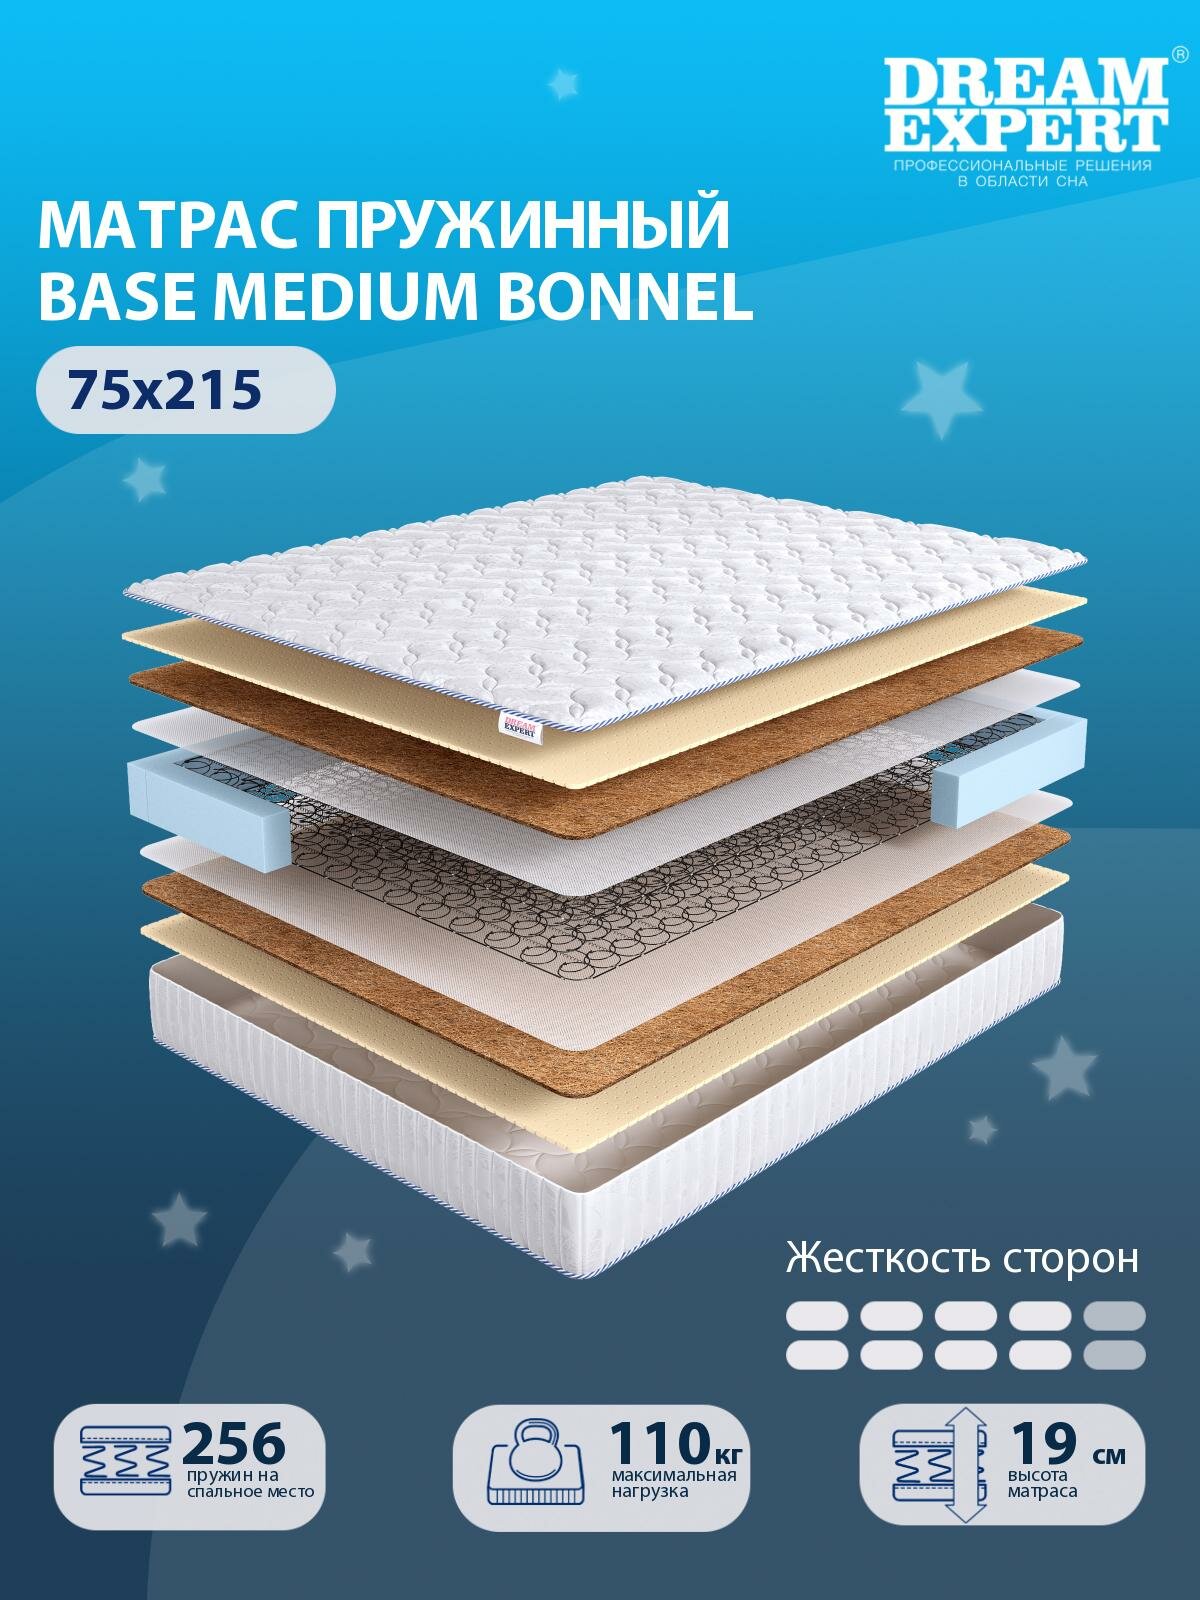 Матрас DreamExpert Base Medium Bonnel выше средней жесткости, детский, зависимый пружинный блок, на кровать 75x215